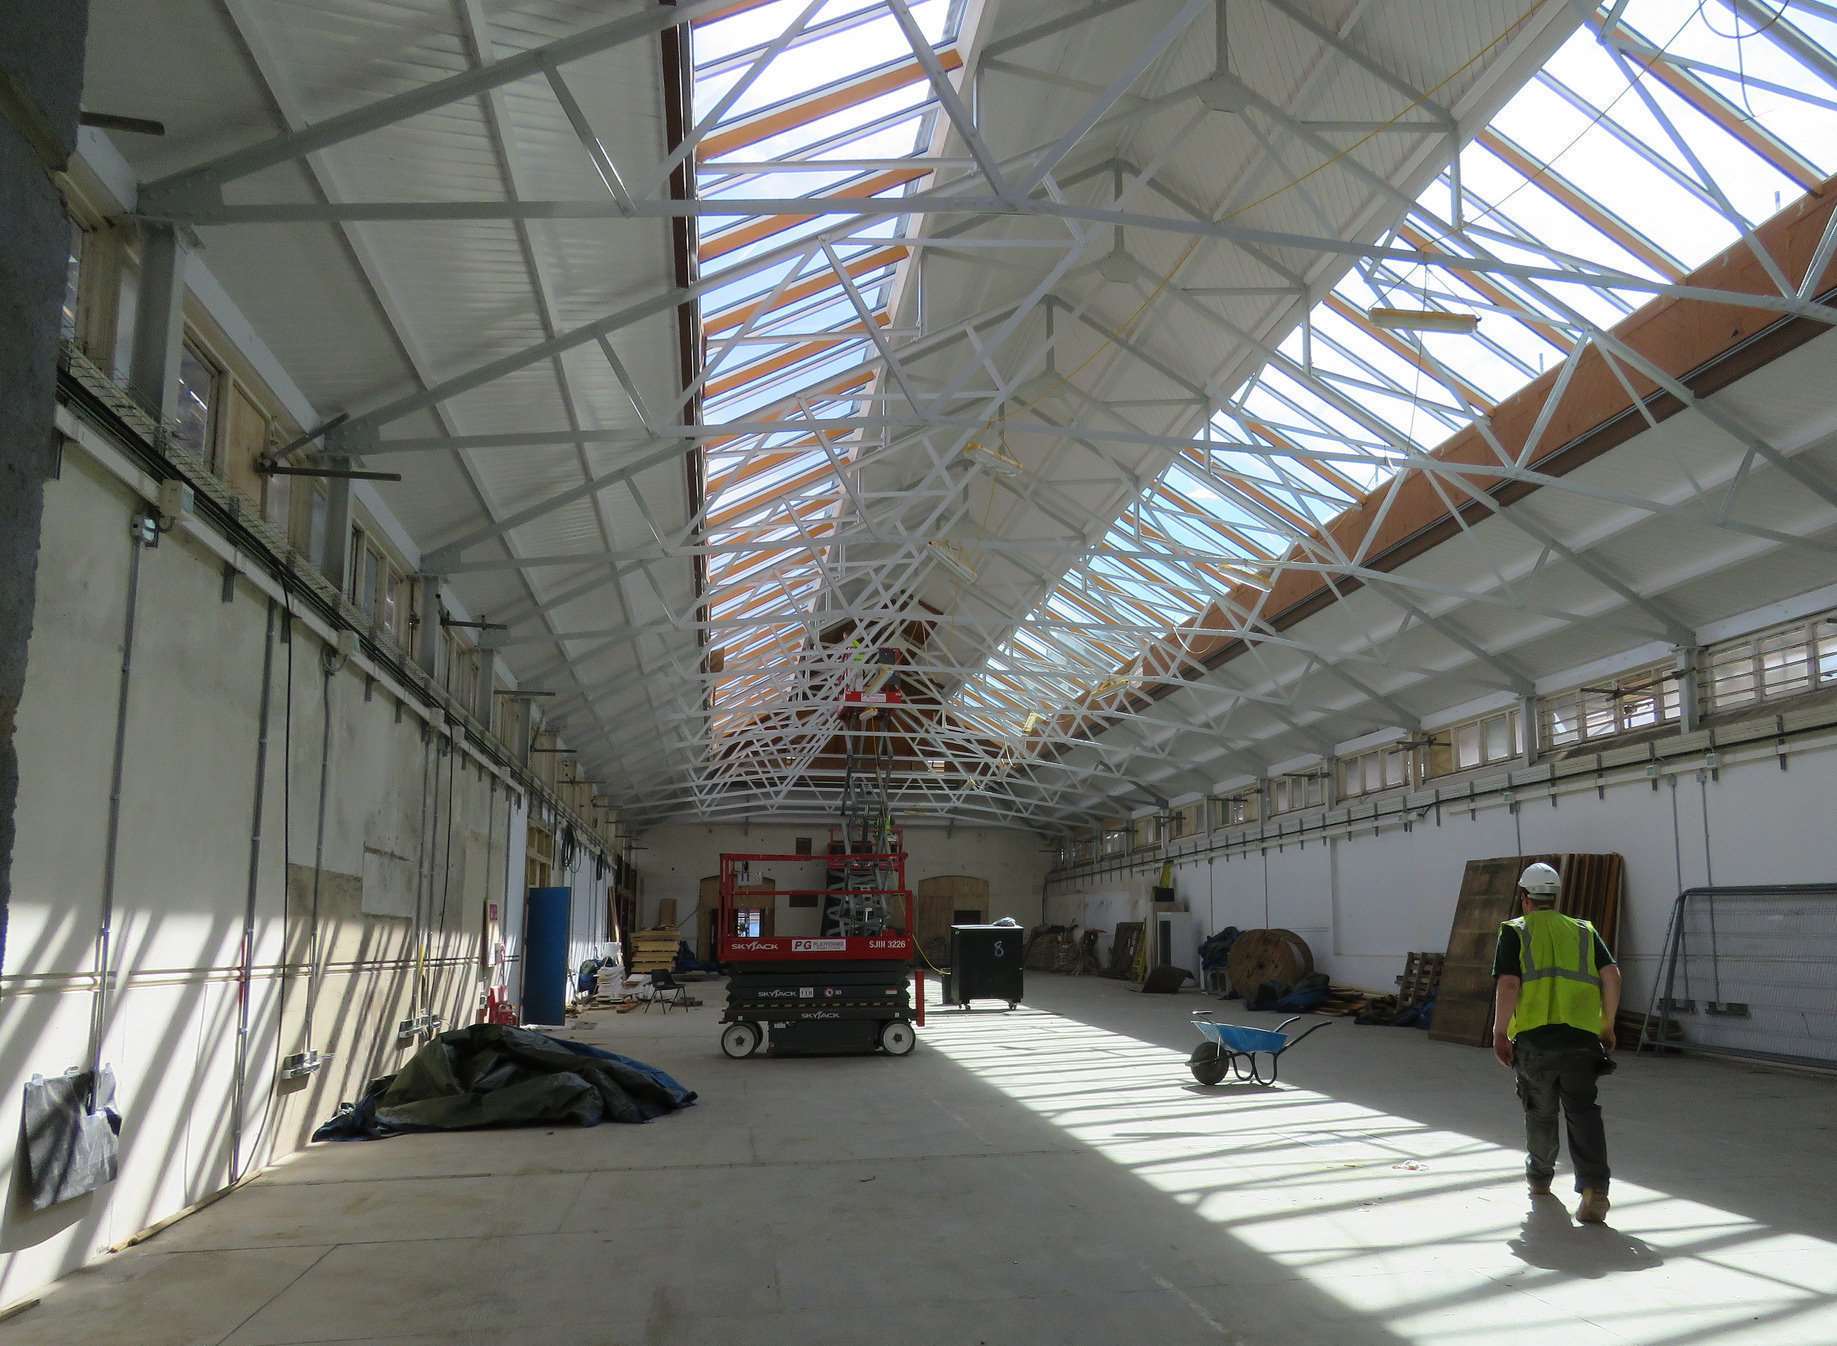 Gravesend's indoor market hall will soon re-open.